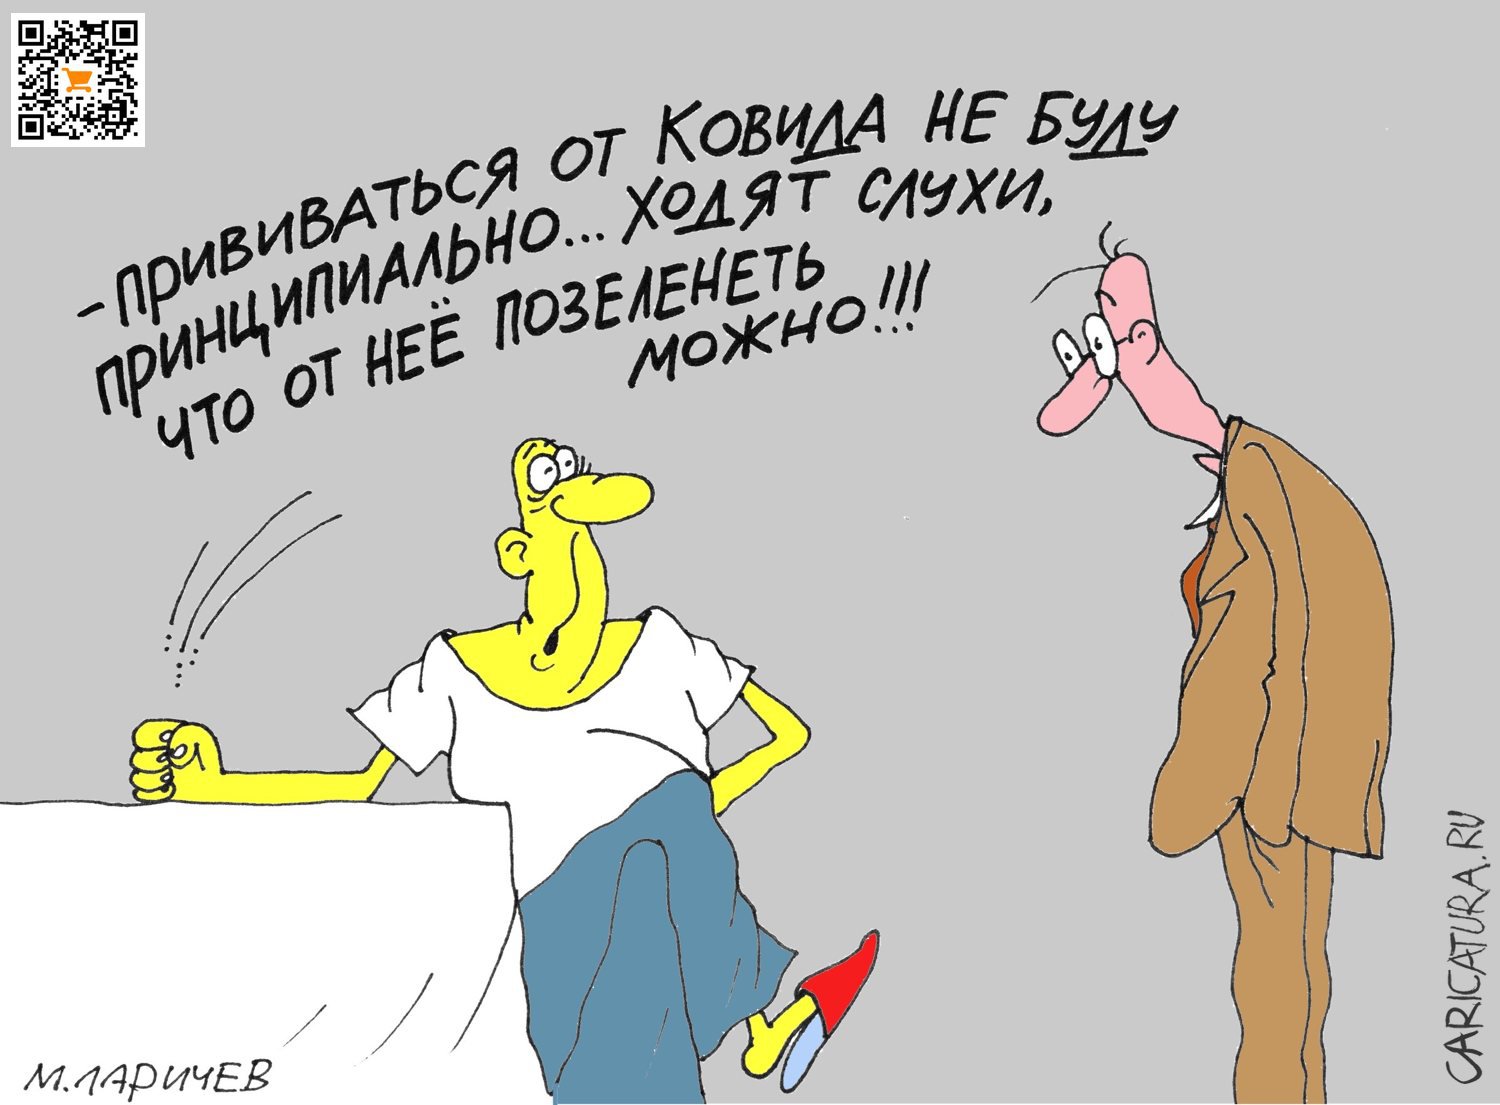 Карикатура "Быть или не быть...", Михаил Ларичев